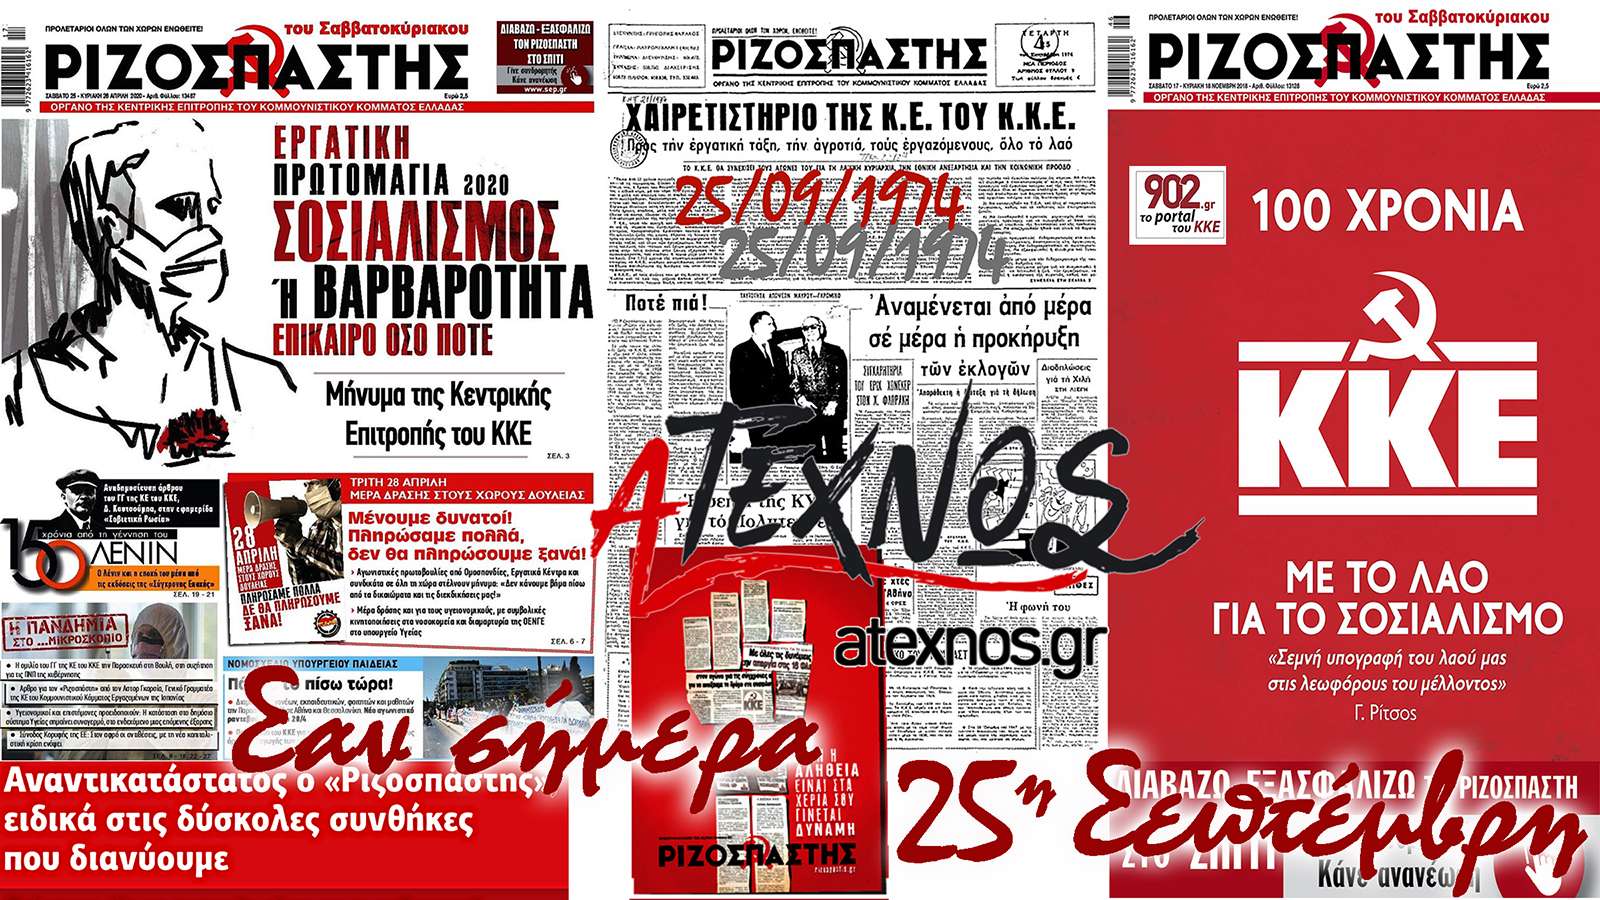 Τι έγινε στον κόσμο και στην Ελλάδα σαν σήμρα 25 Σεπτεμβρίου;